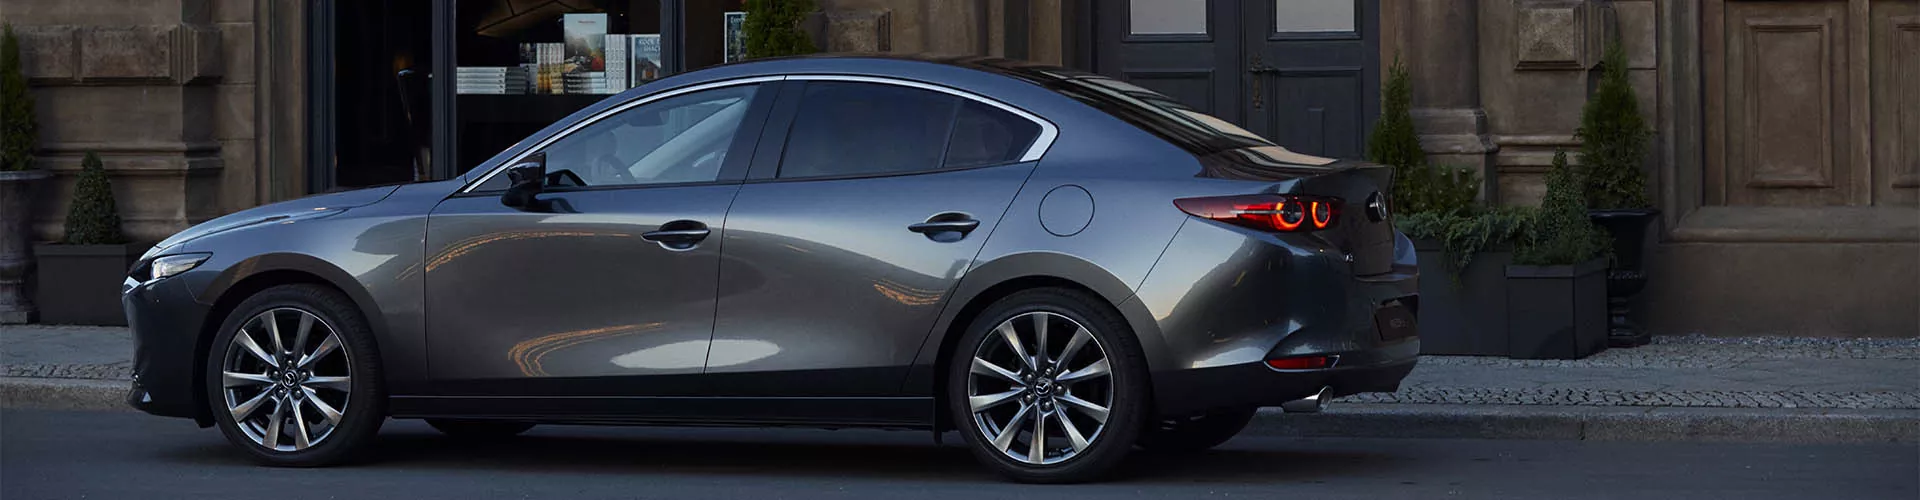 Mazda2 Hybrid: Dieser Hersteller steckt wirklich dahinter